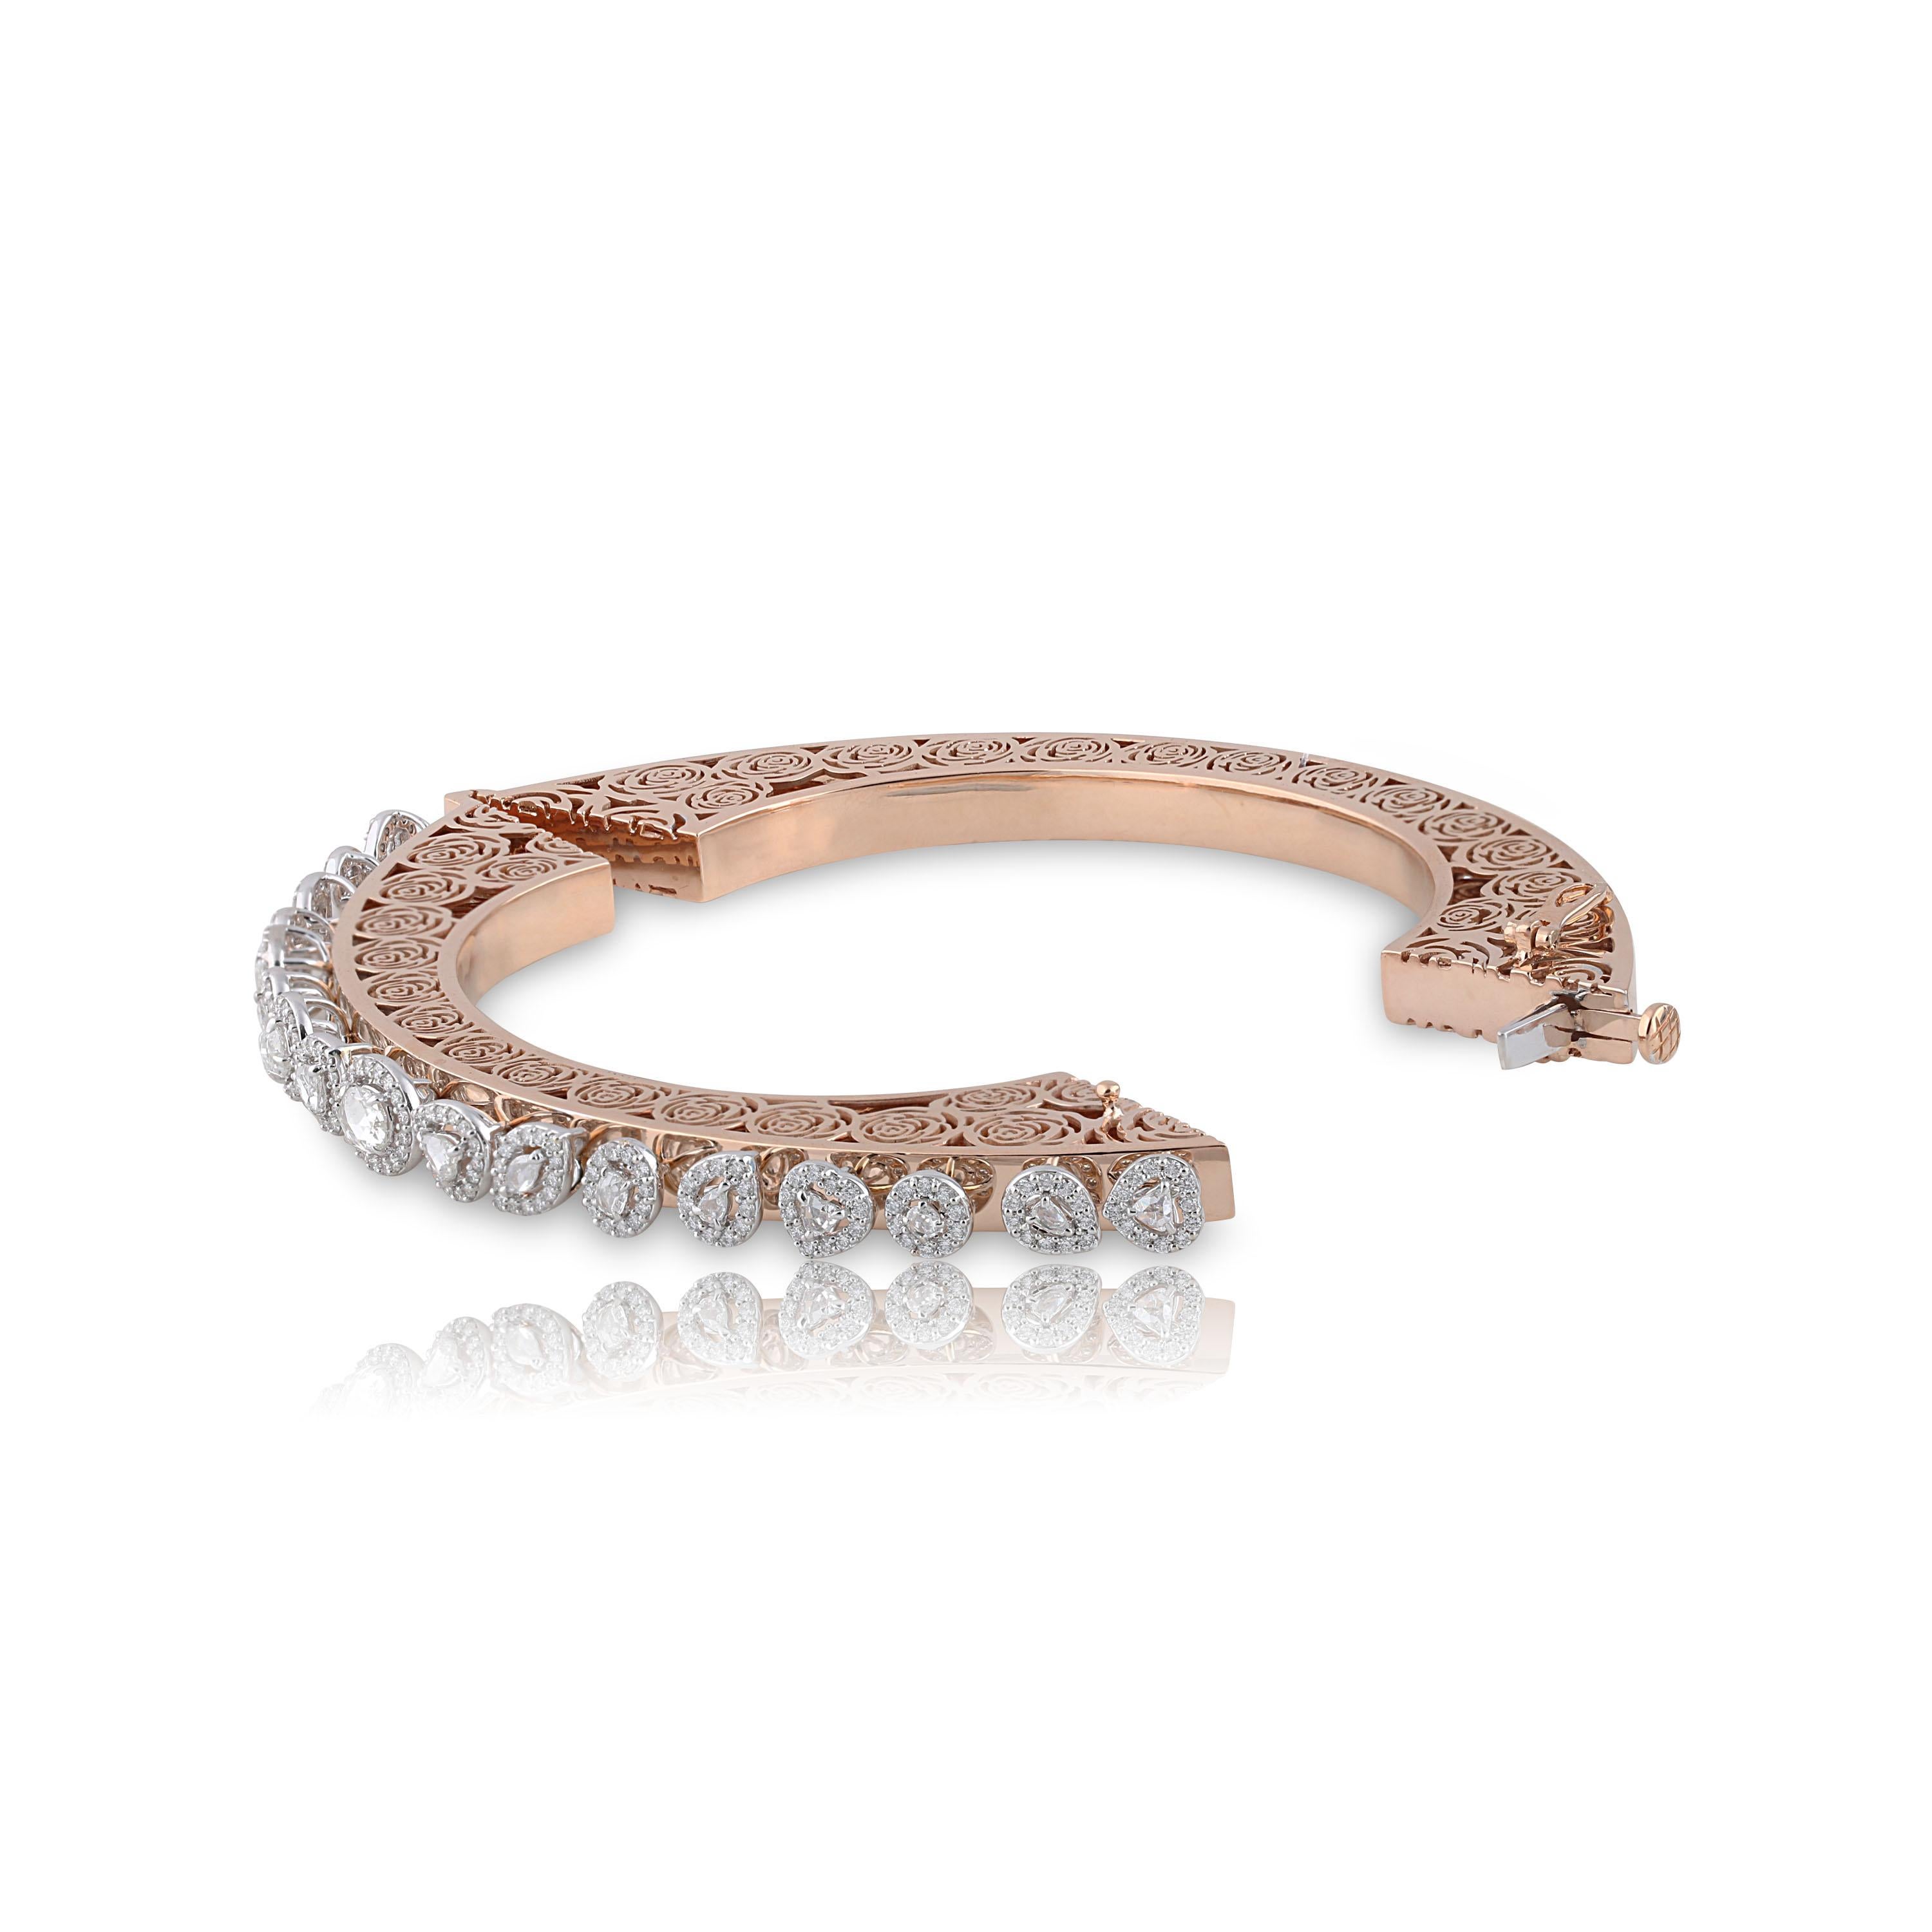 Studio Rêves Diamonds and Filigree Bracelet in 18 Karat Gold For Sale 1